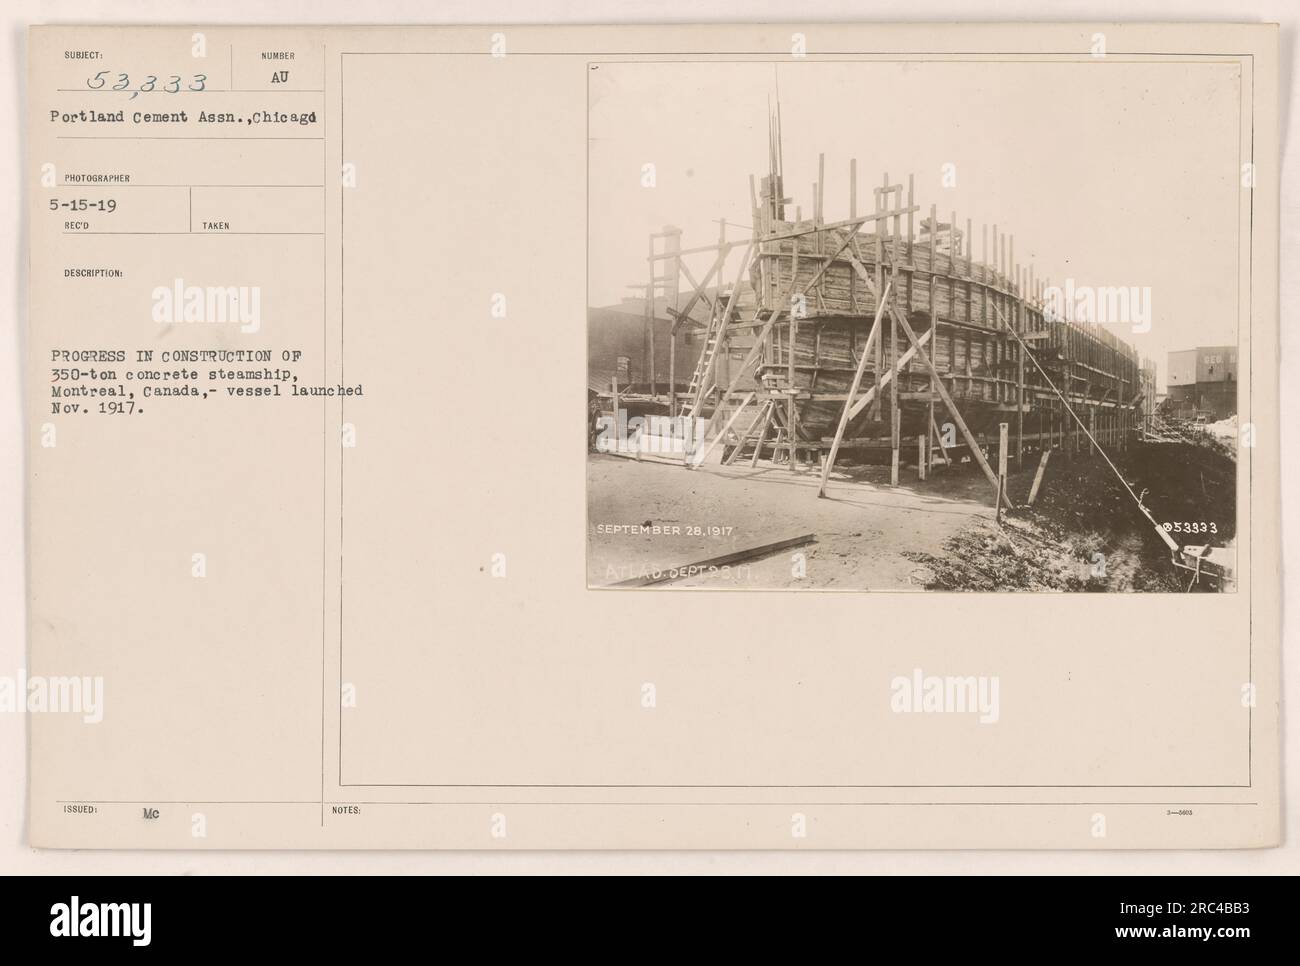 Avanzamento della costruzione di una nave a vapore in cemento da 350 tonnellate a Montreal, Canada. La nave è stata varata nel novembre 1917. La fotografia, scattata dalla Portland Cement Association, è un resoconto del processo di costruzione del 28 settembre 1917. Foto Stock